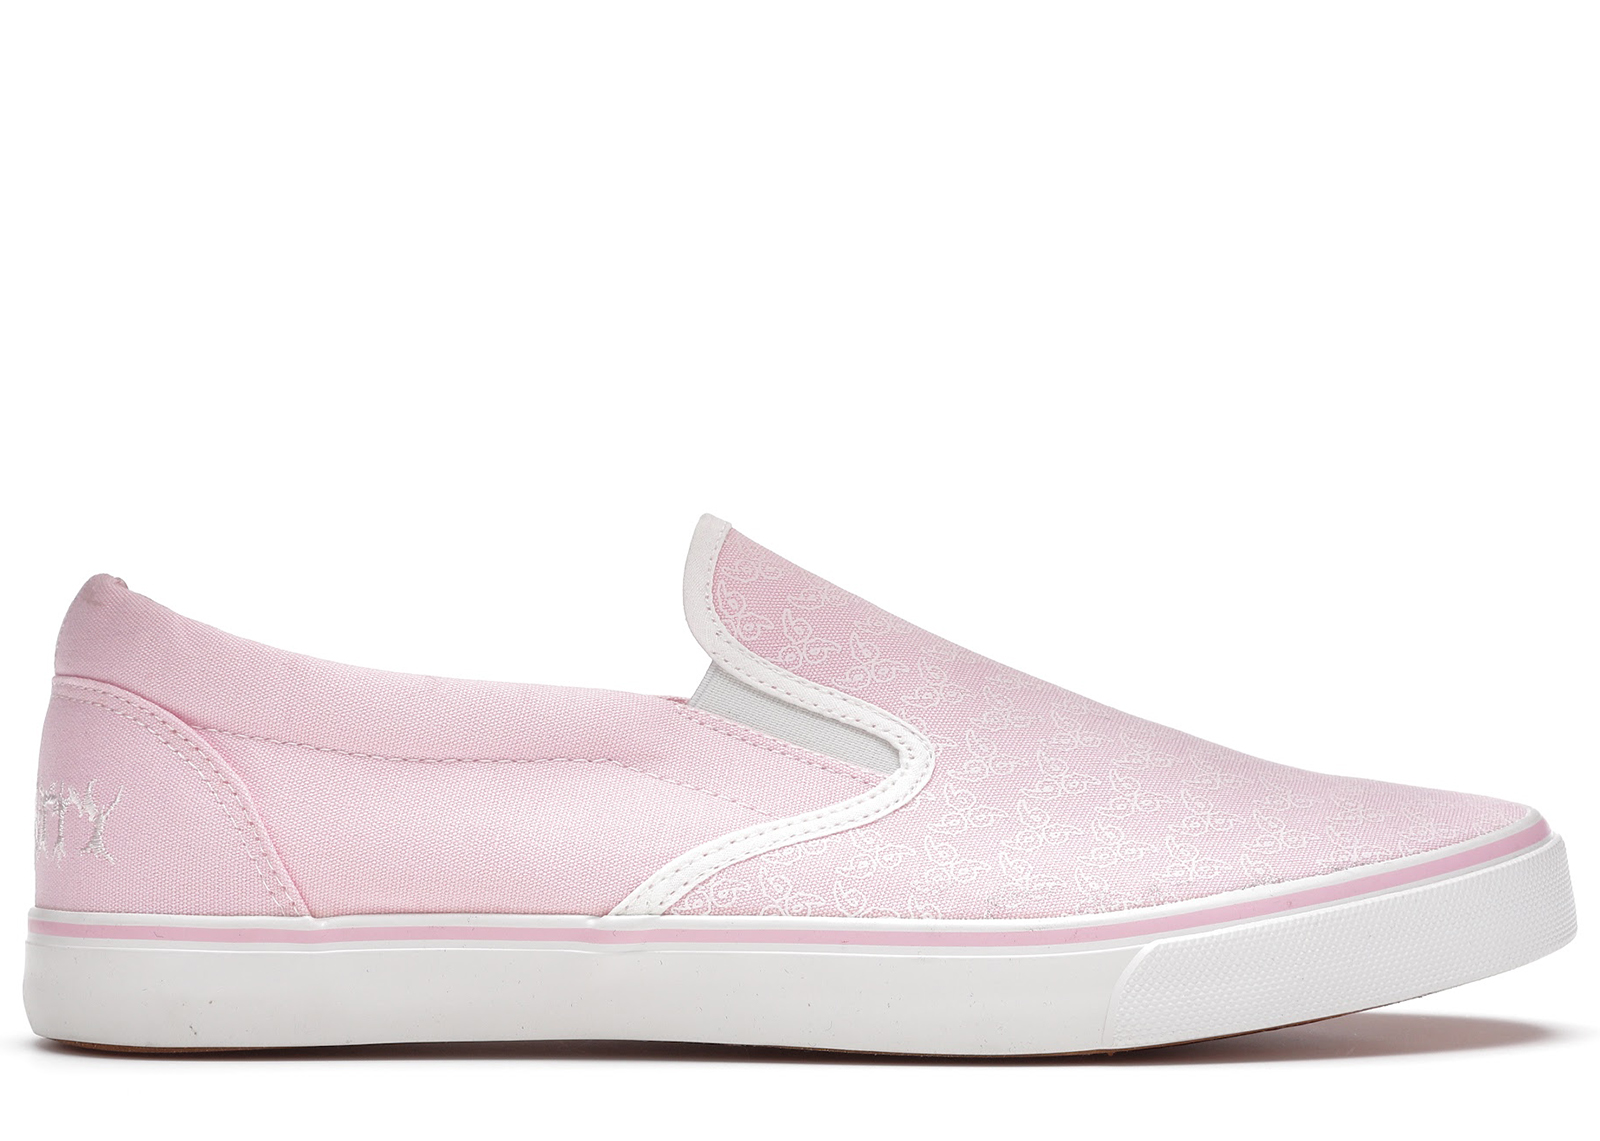 Juice WRLD 999 No Vanity Shoe Pink Men's - Sneakers - US